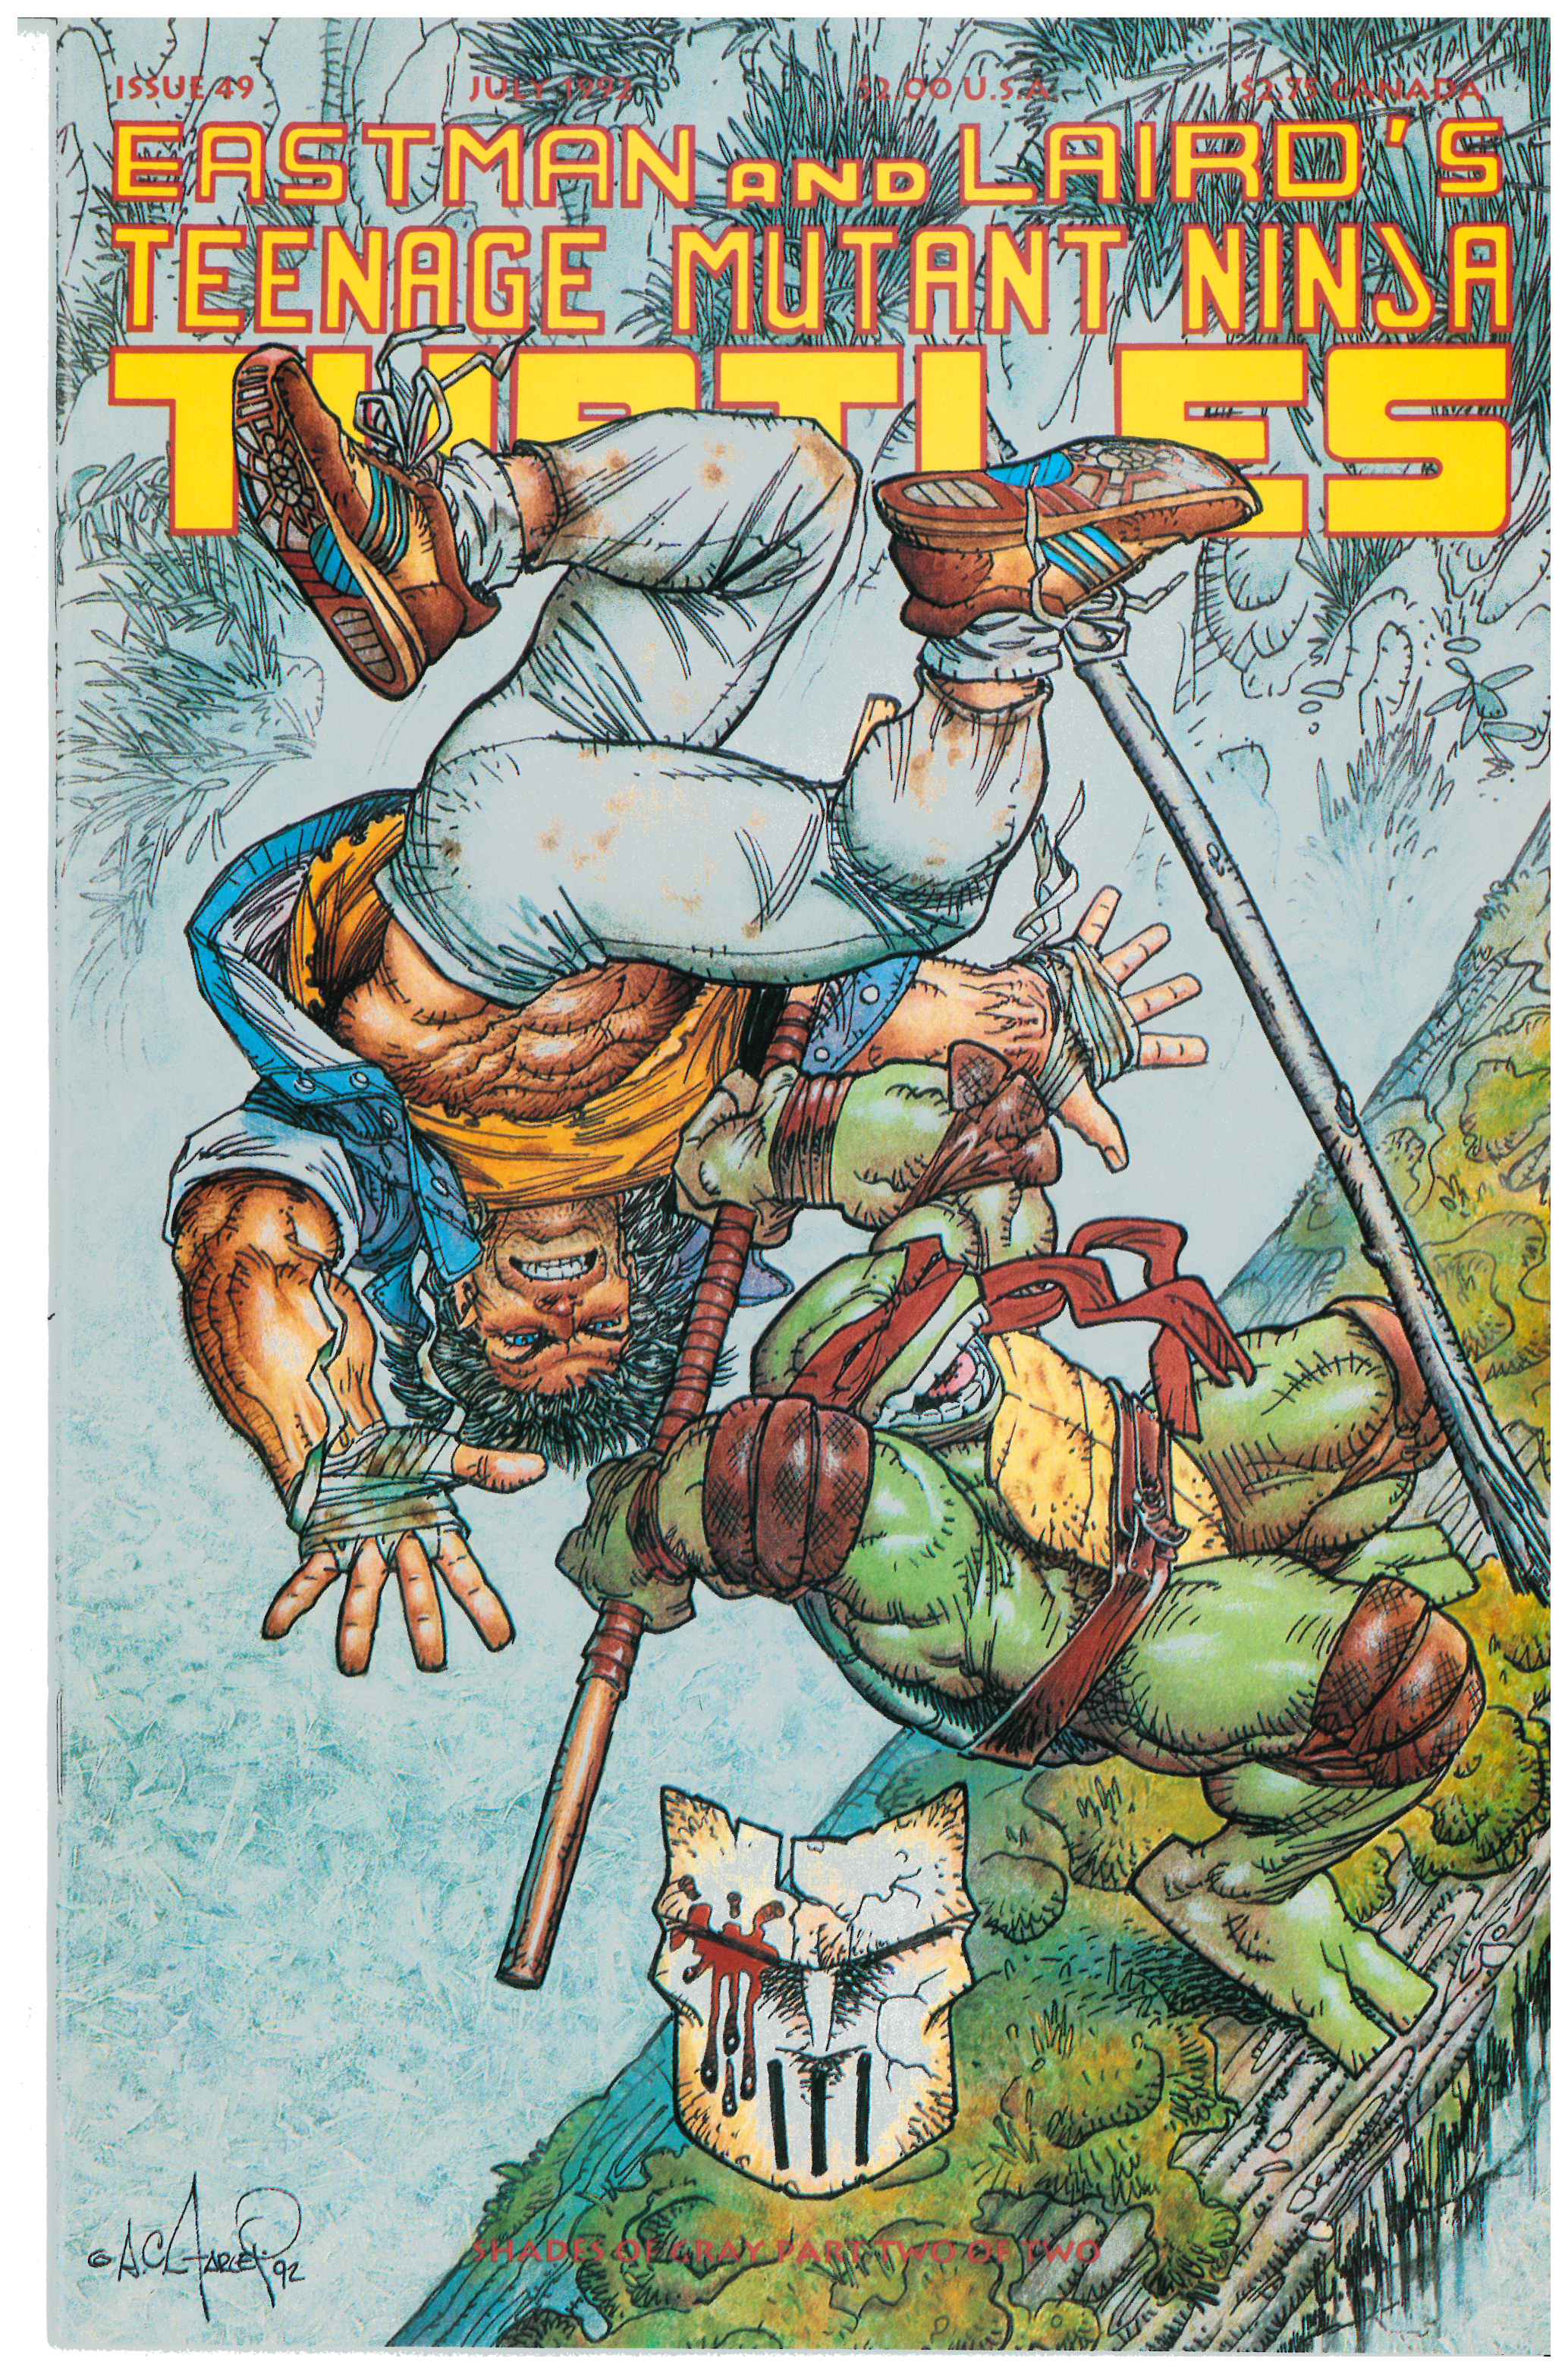 Tales of the Teenage Mutant Ninja Turtles #49